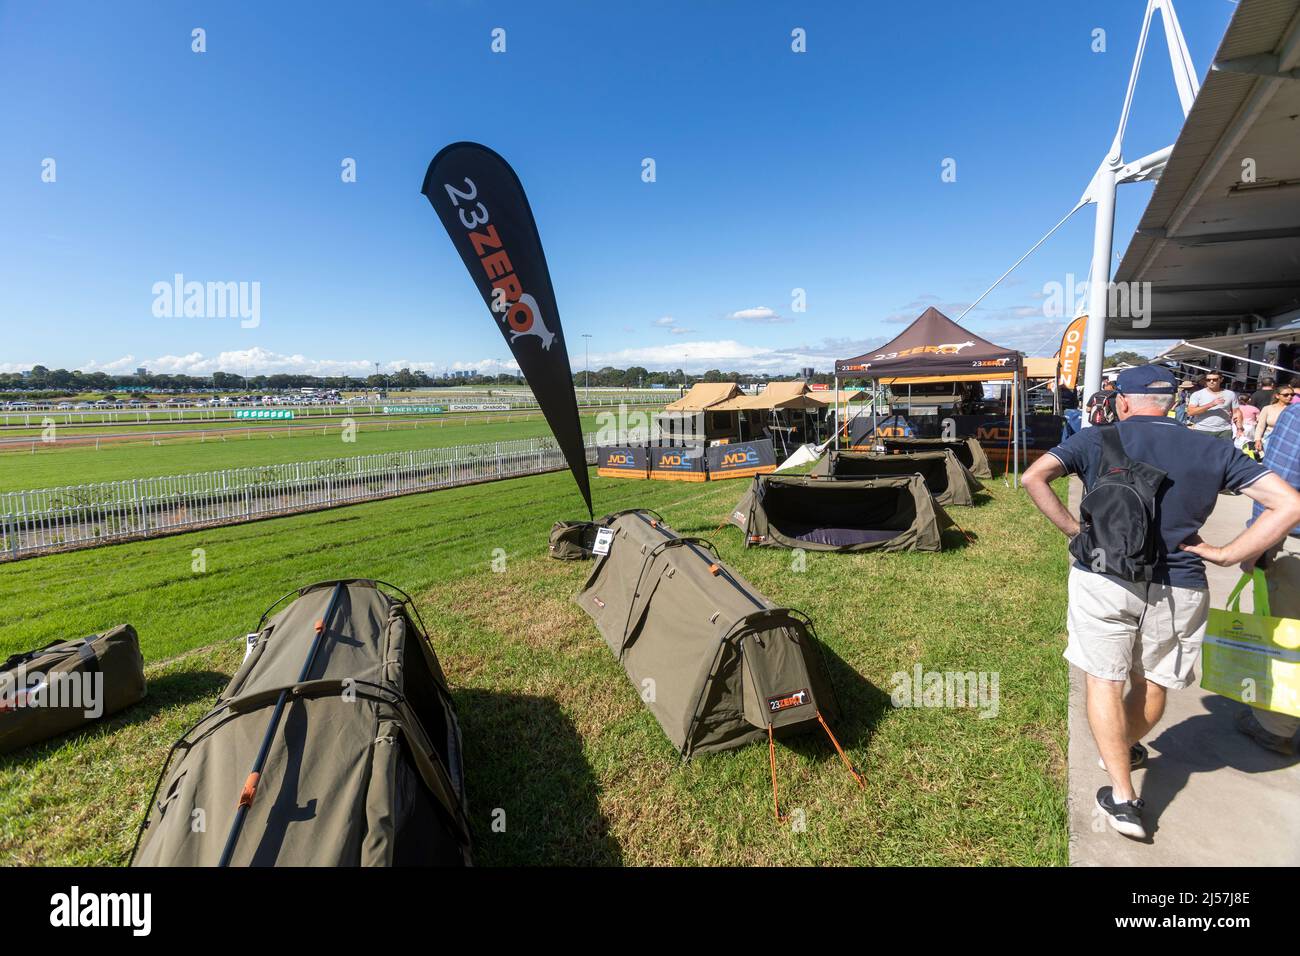 23 Zero-Zelte und -Swags sind auf der Camping- und Caravanausstellung in Sydney auf der Rennbahn Rosehill in Sydney, Australien, erhältlich Stockfoto